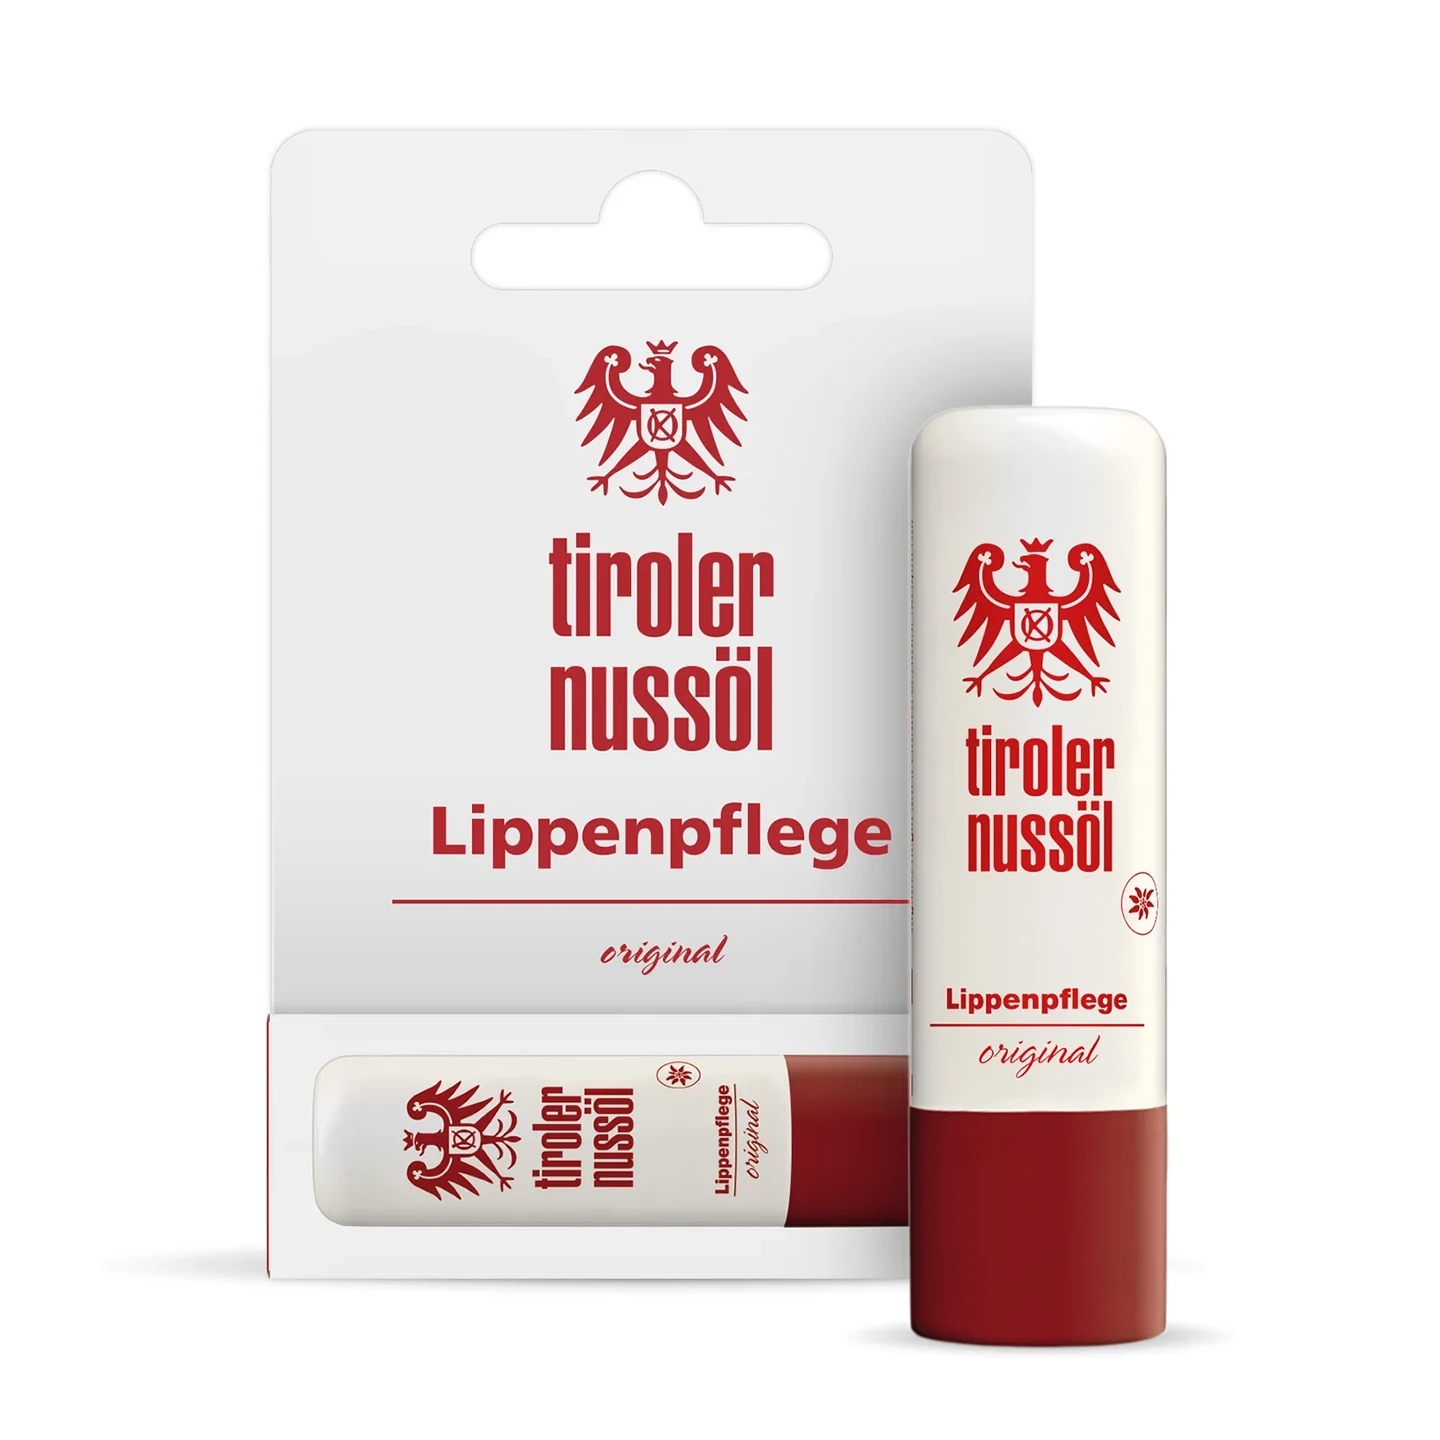 Tiroler Nussöl Original Lippenpflege – Packshot mit Verpackung Vorderansicht